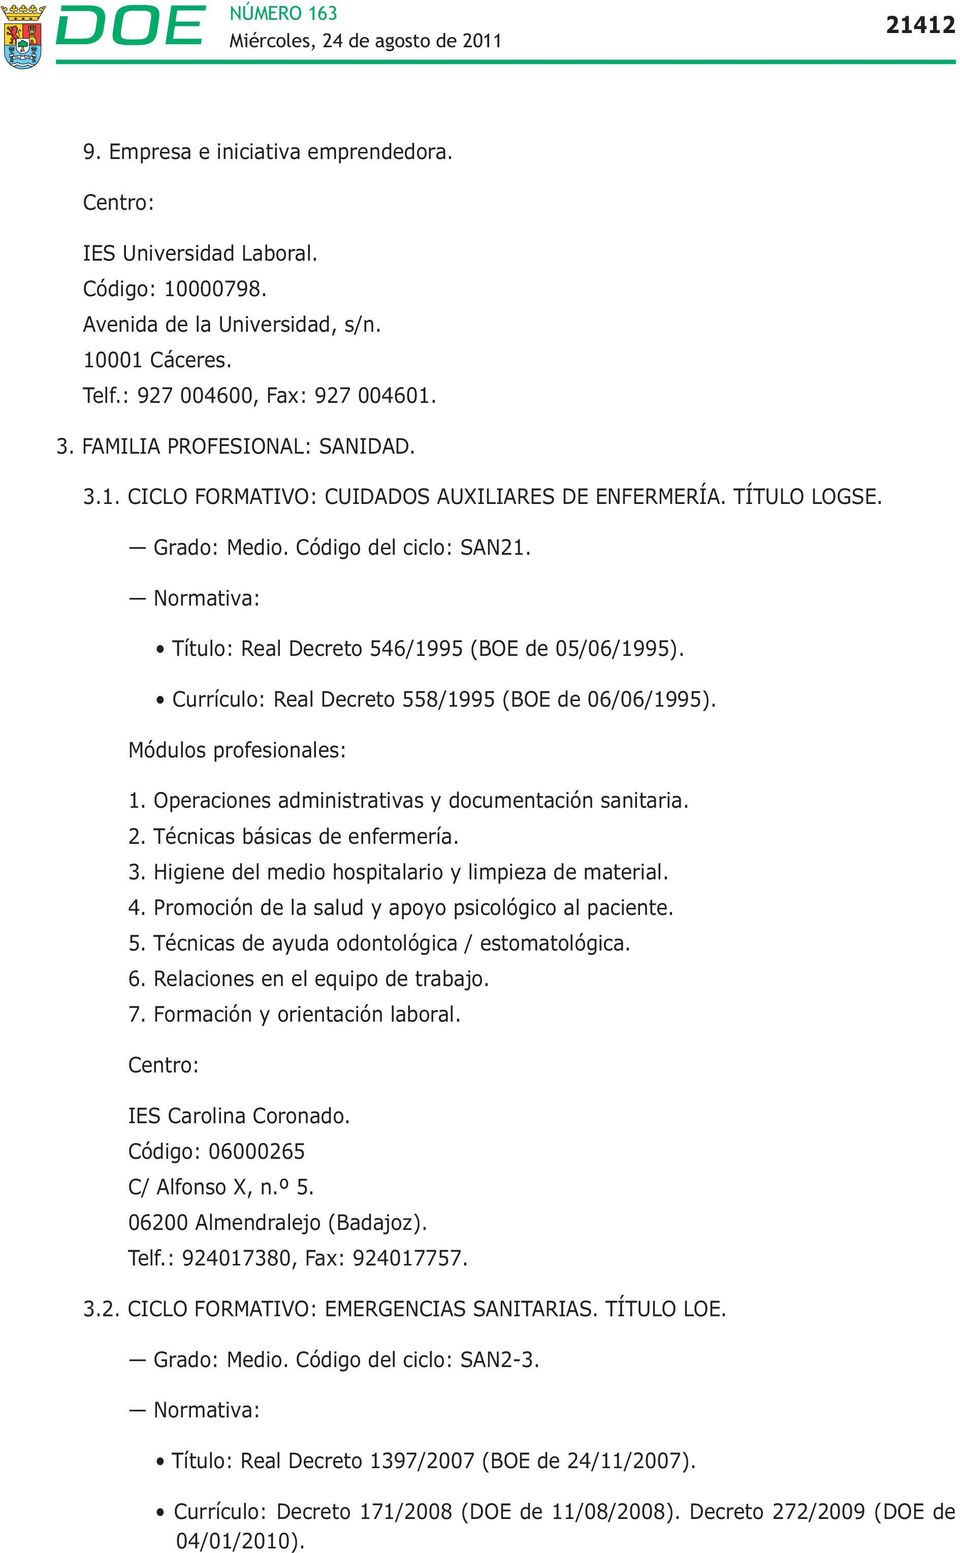 Normativa: Título: Real Decreto 546/1995 (BOE de 05/06/1995). Currículo: Real Decreto 558/1995 (BOE de 06/06/1995). Módulos profesionales: 1. Operaciones administrativas y documentación sanitaria. 2.